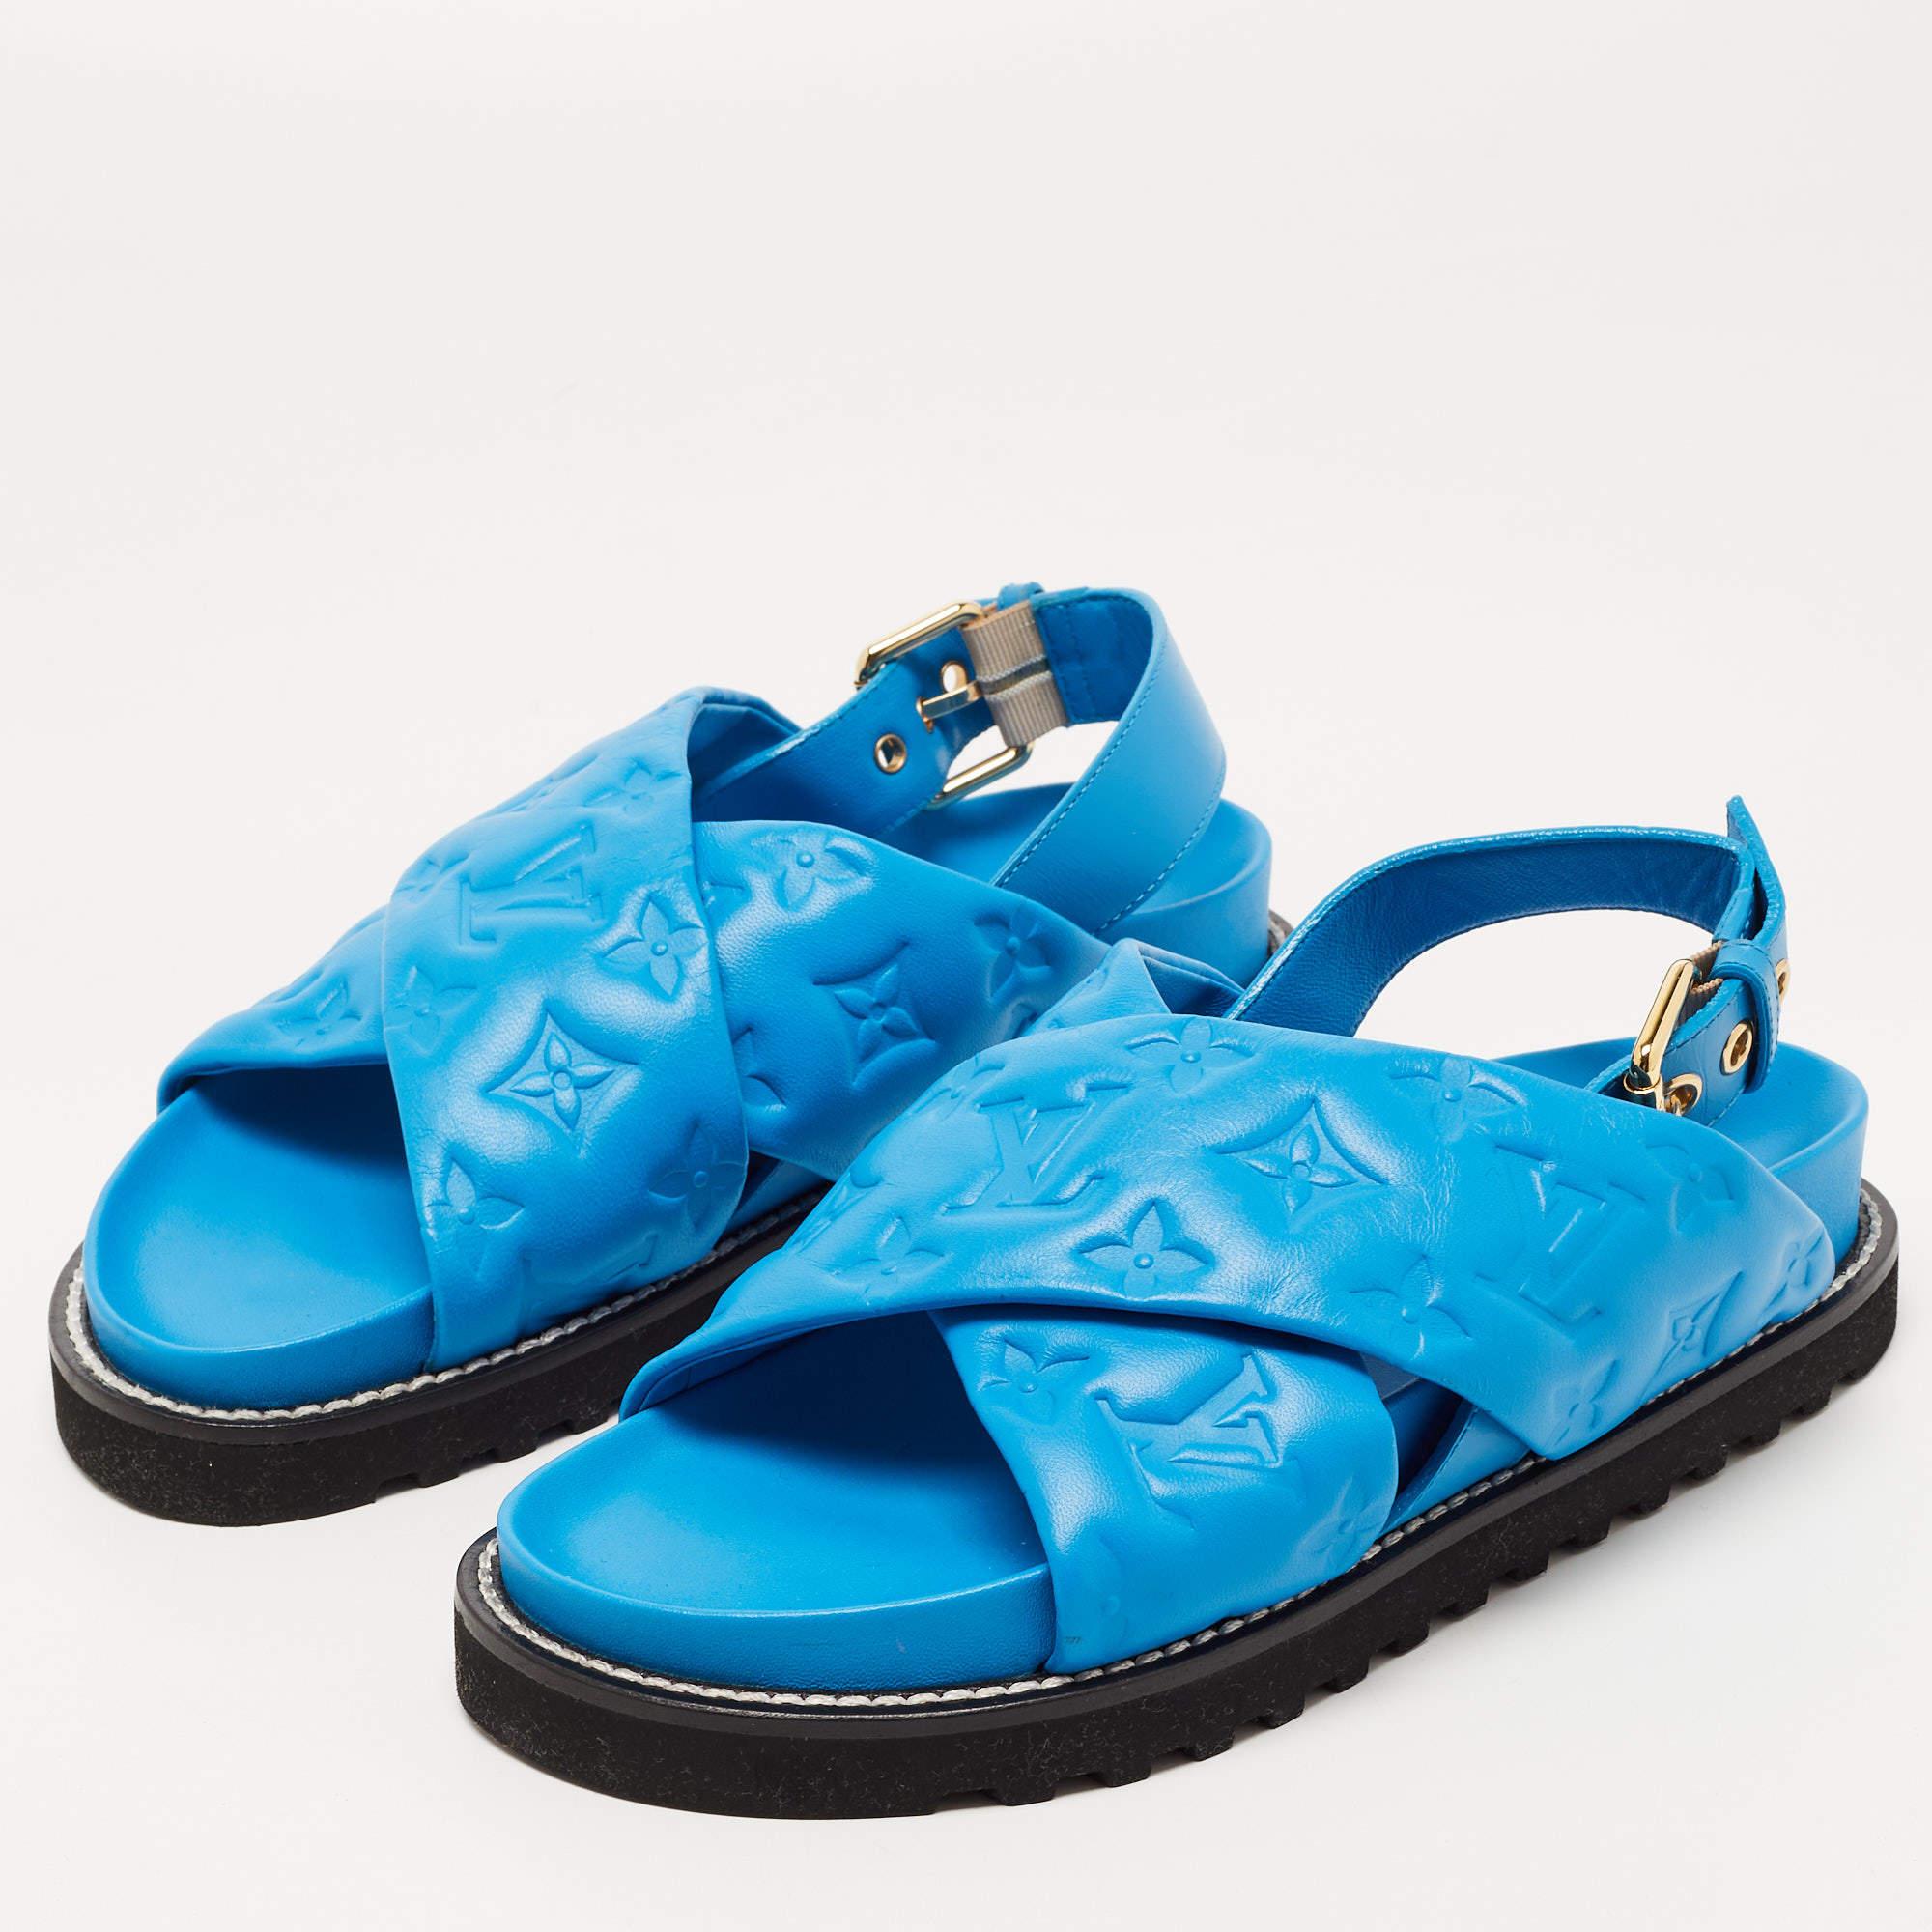 Women's Louis Vuitton Blue Leather Paseo Confort Slingback Sandals Size 37